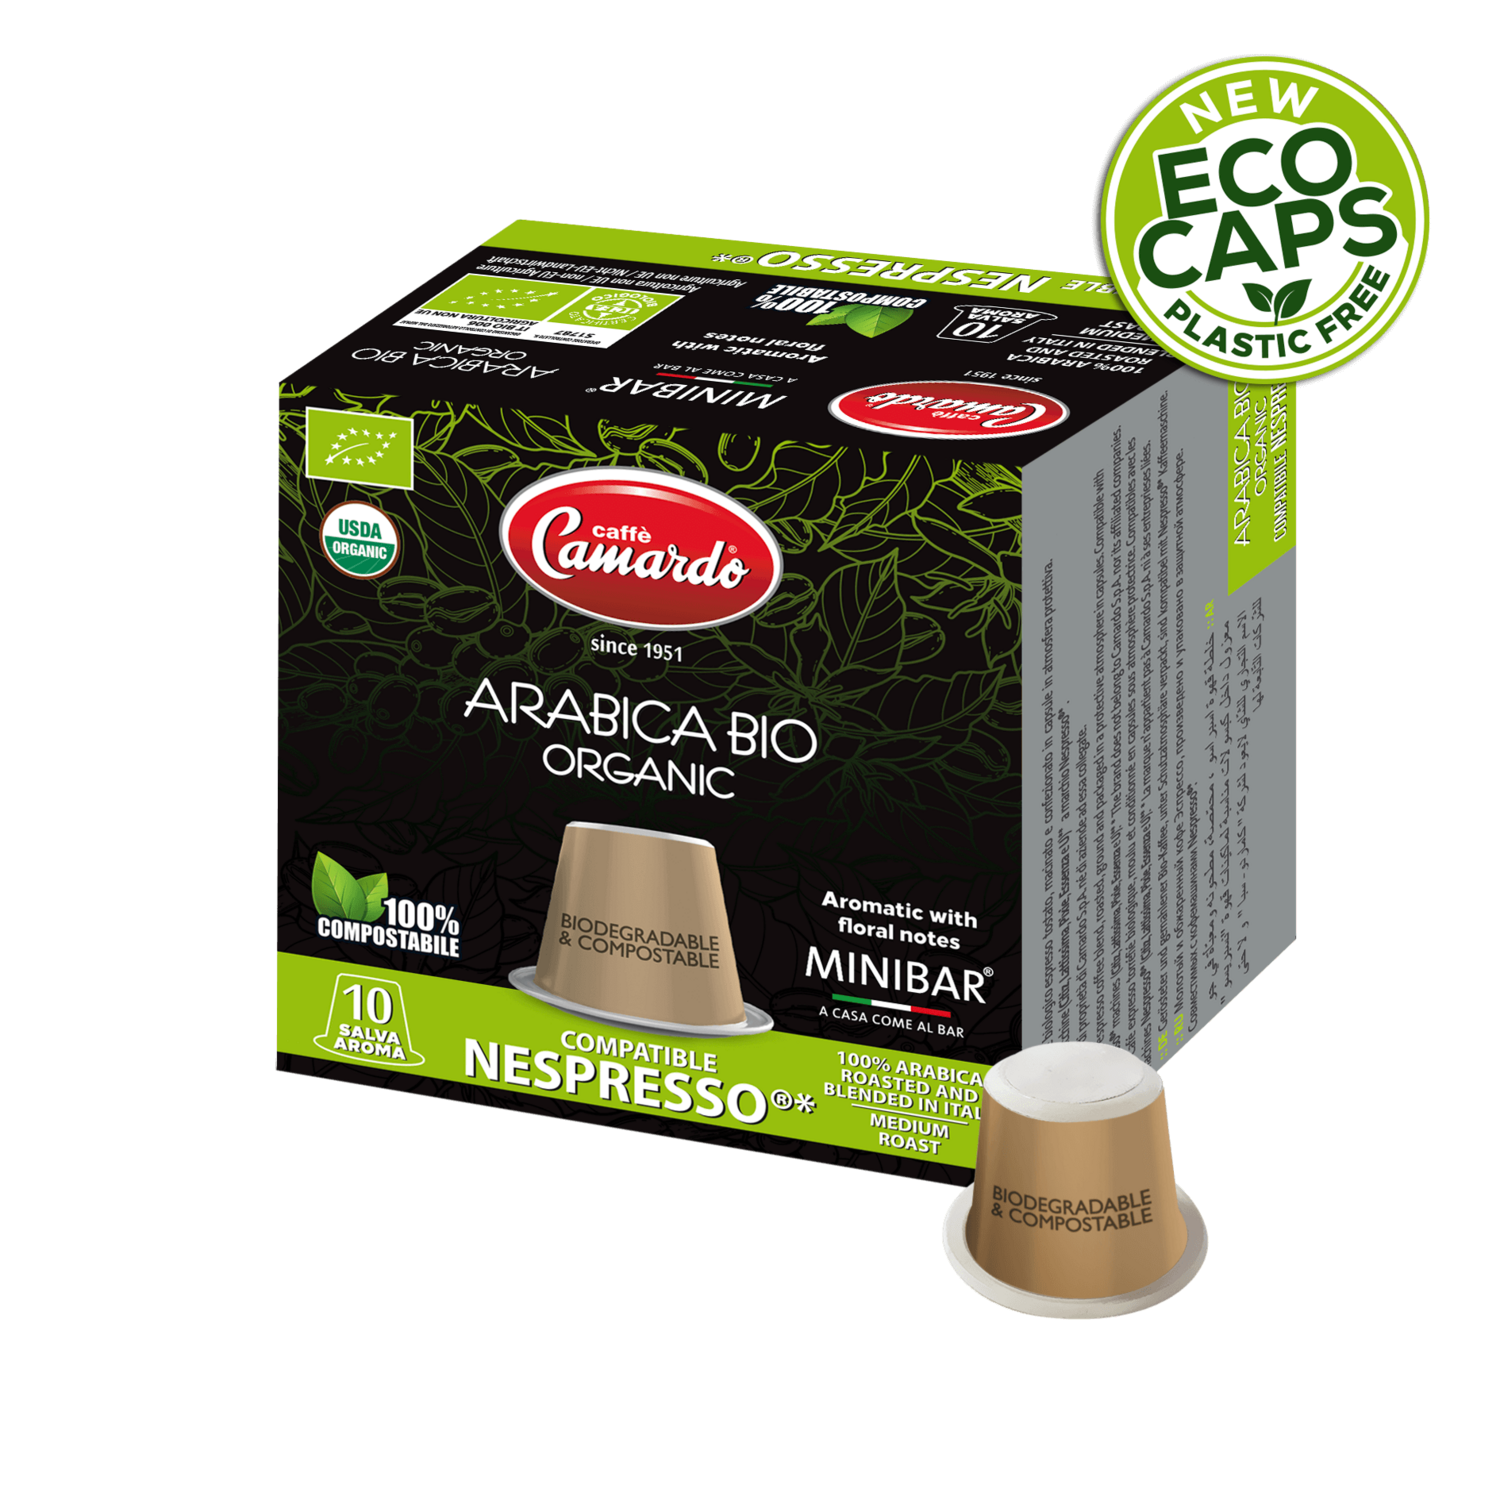 Arabica Bio Organic, compatible Nespresso®